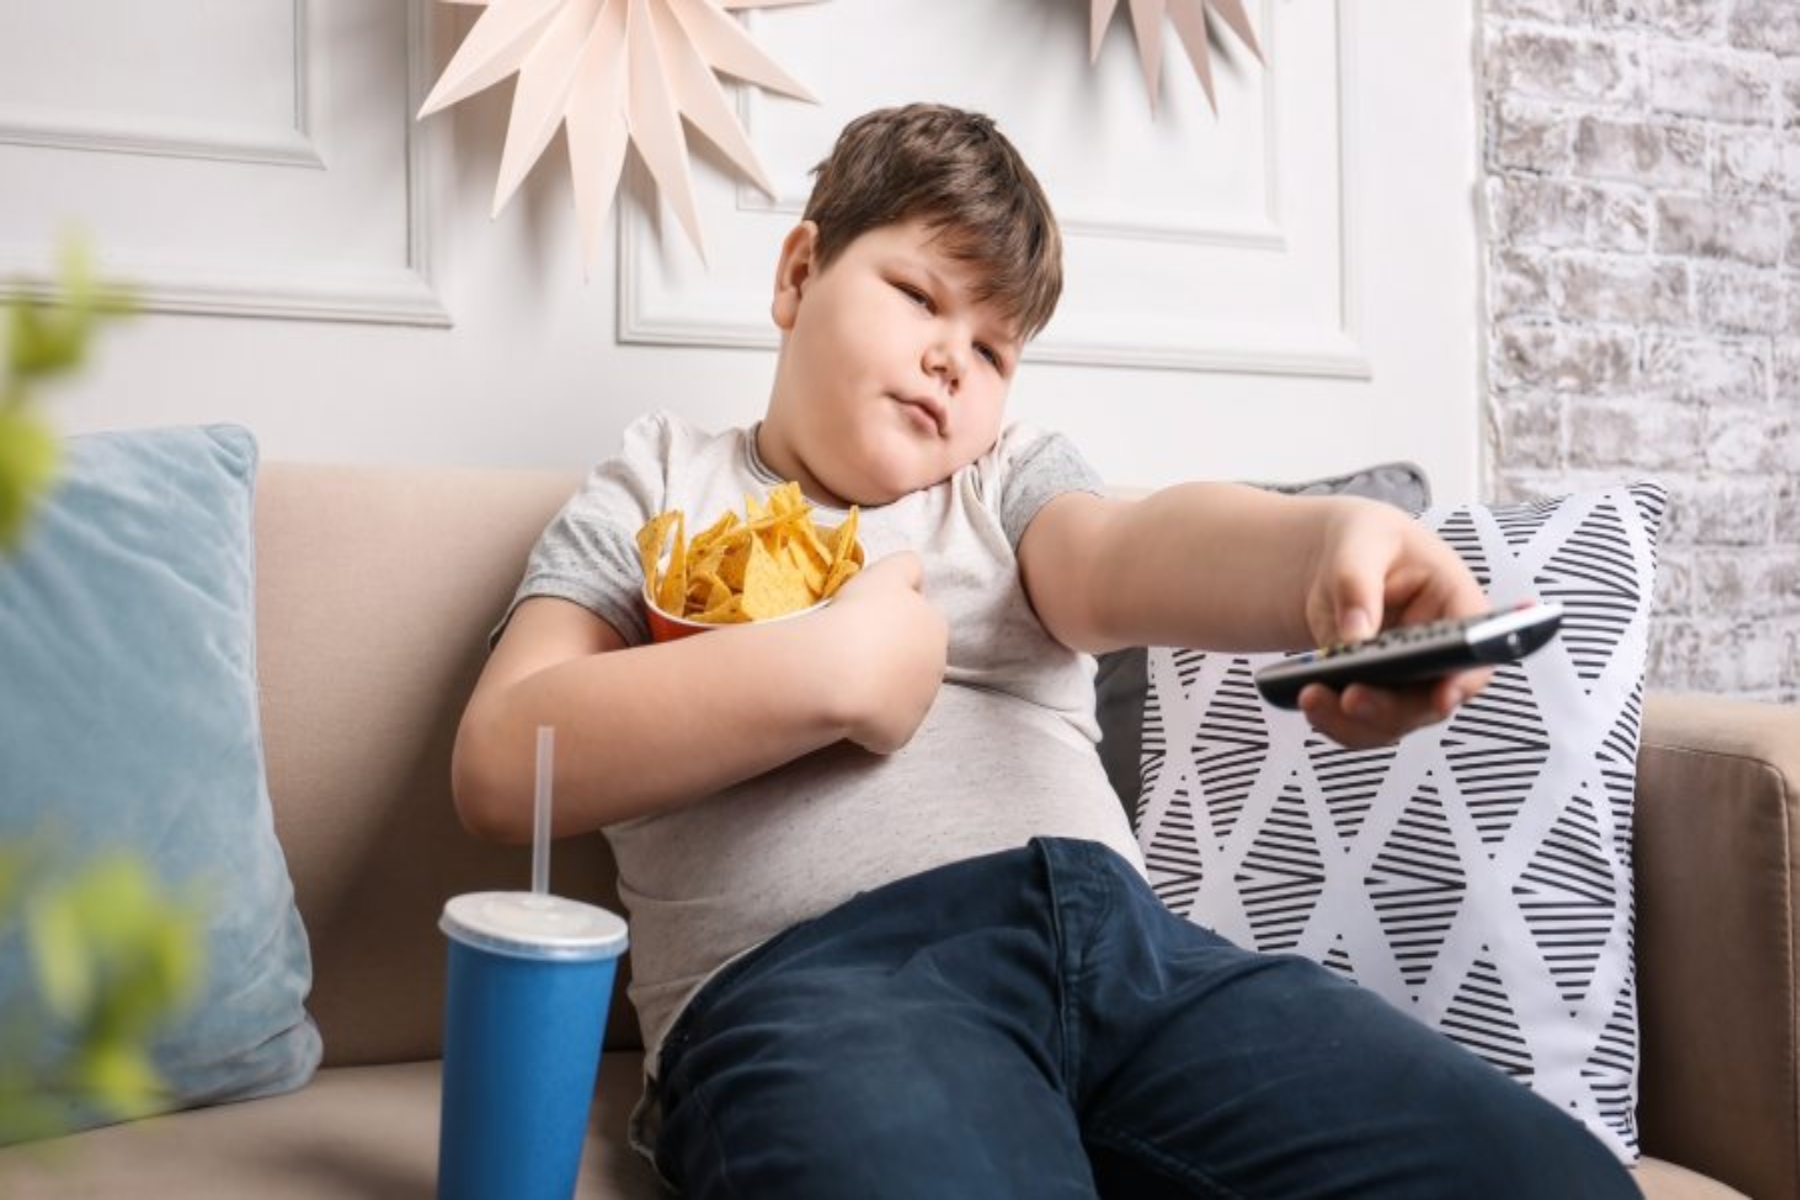 Παιδική παχυσαρκία: Αυξήθηκε σημαντικά κατά τη διάρκεια της πανδημίας